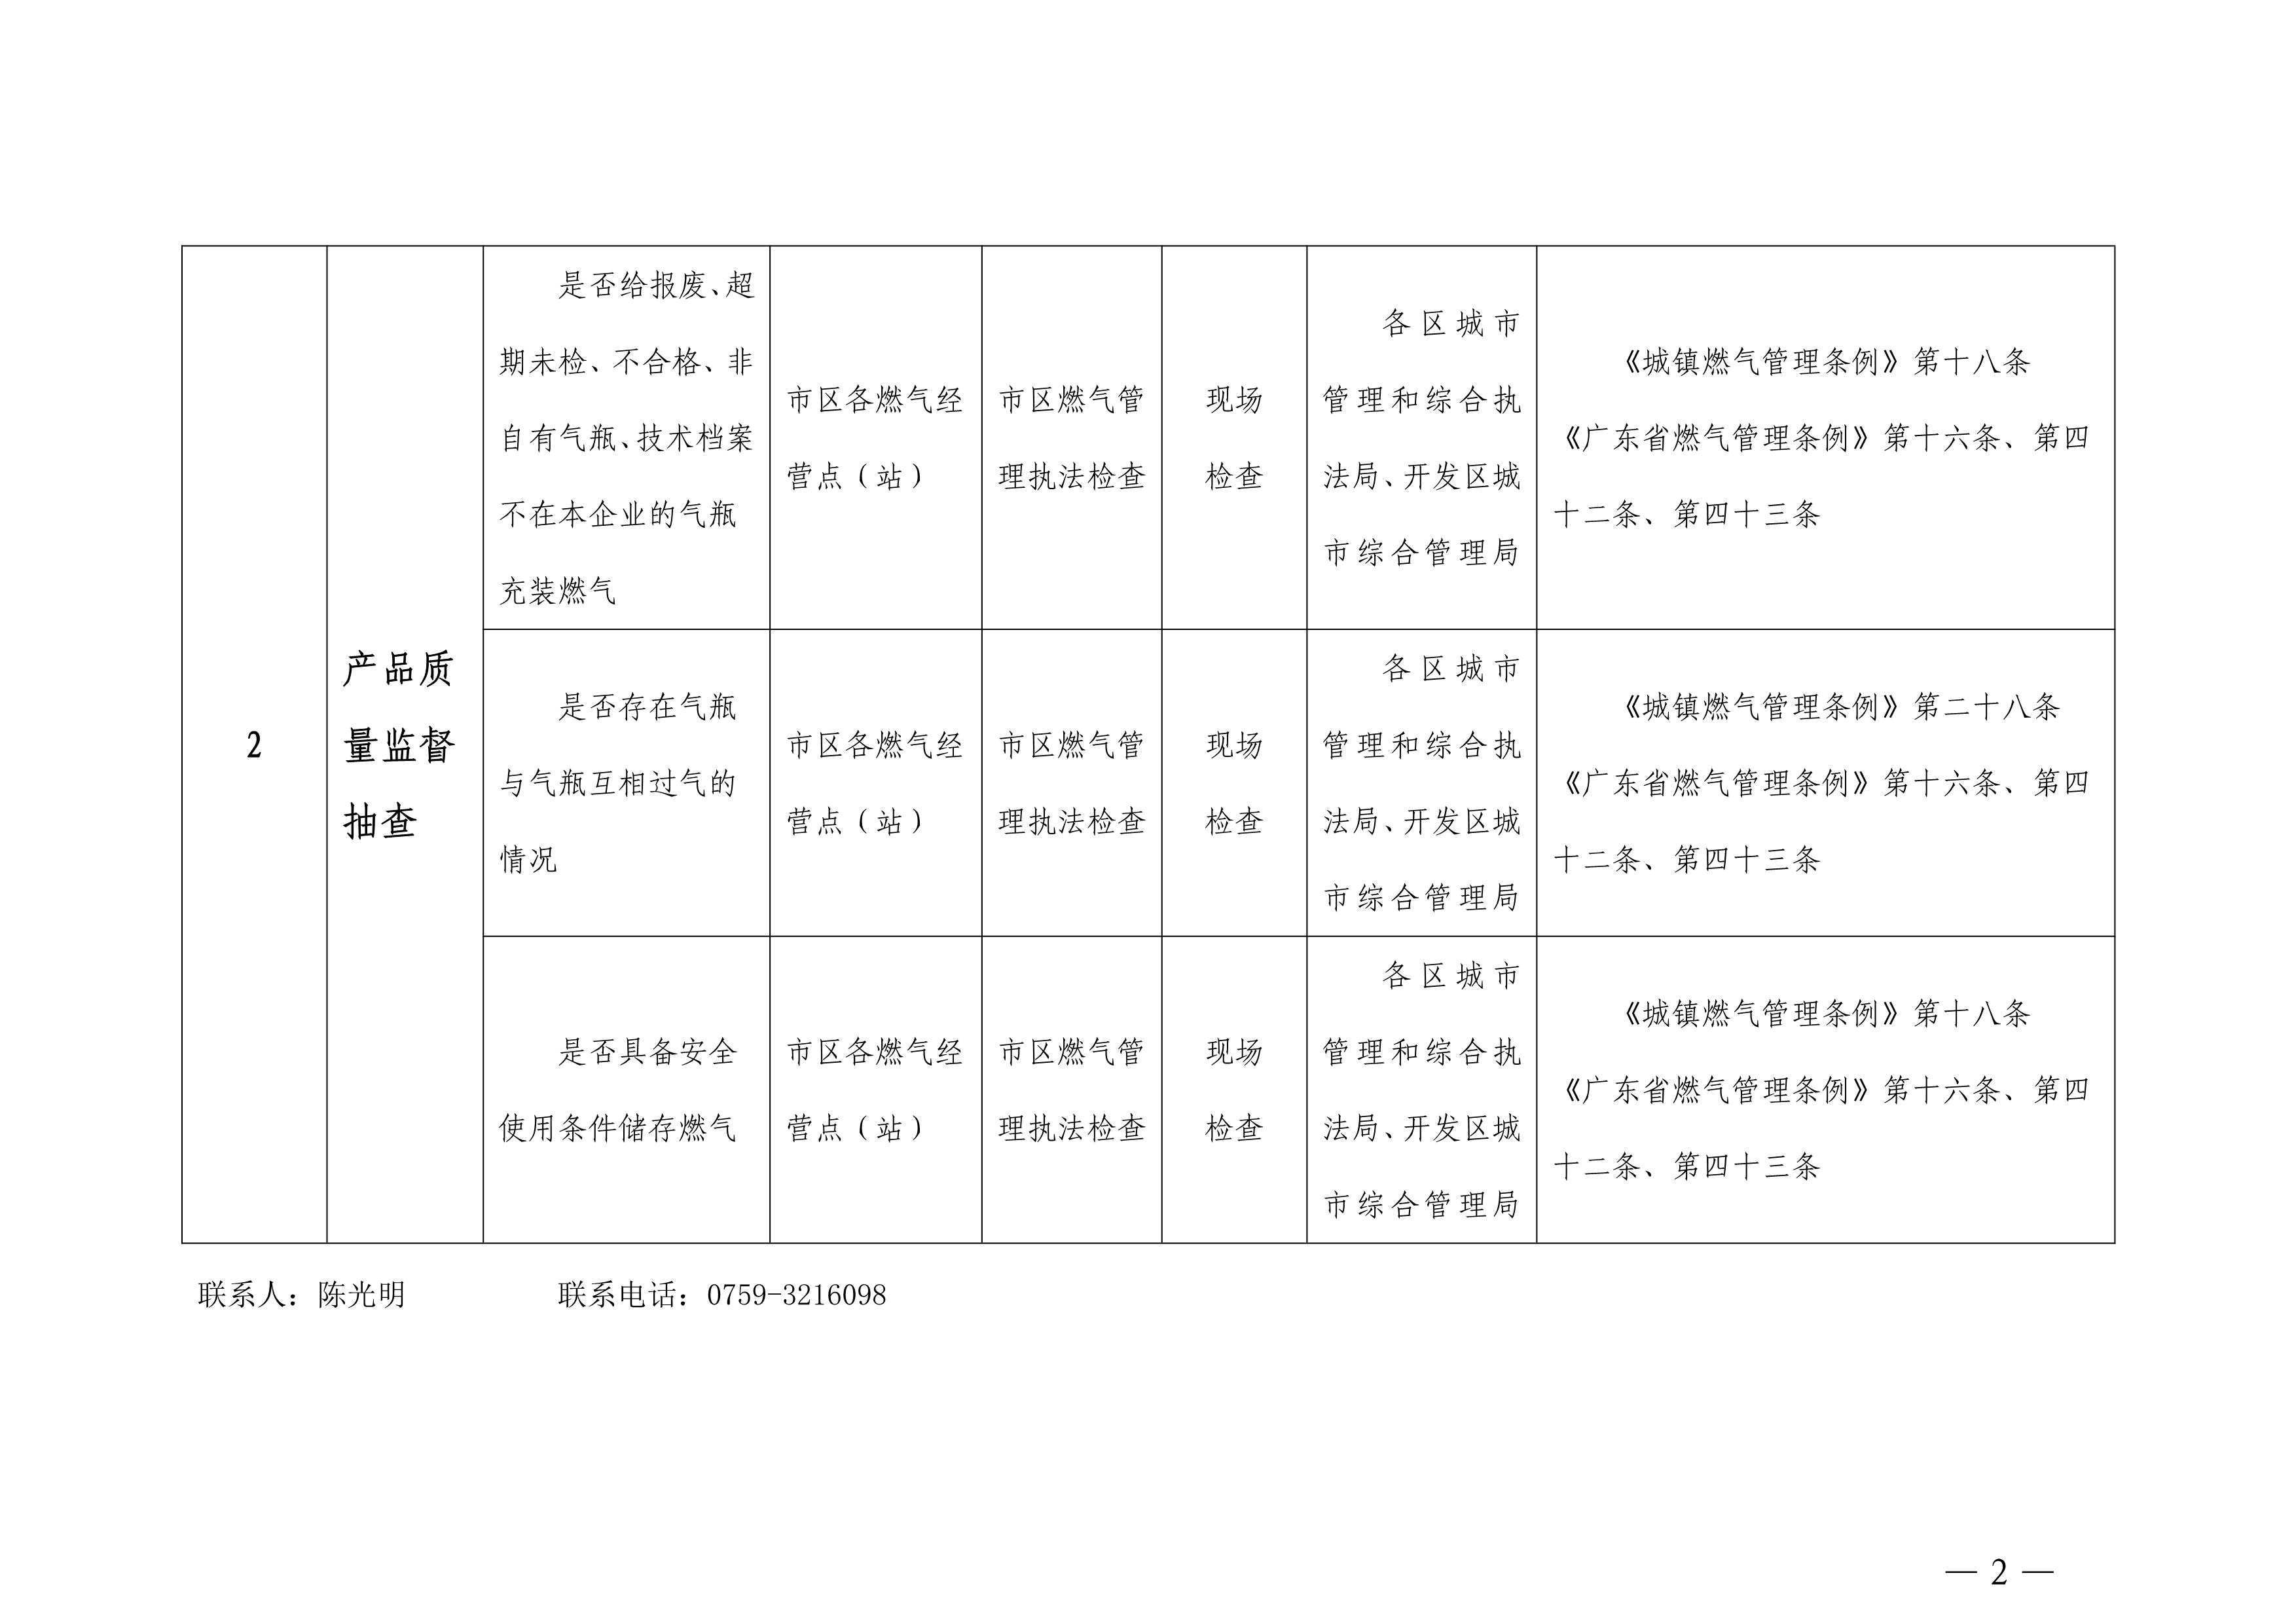 湛江市城市管理和综合执法局随机抽查事项清单_2.jpg